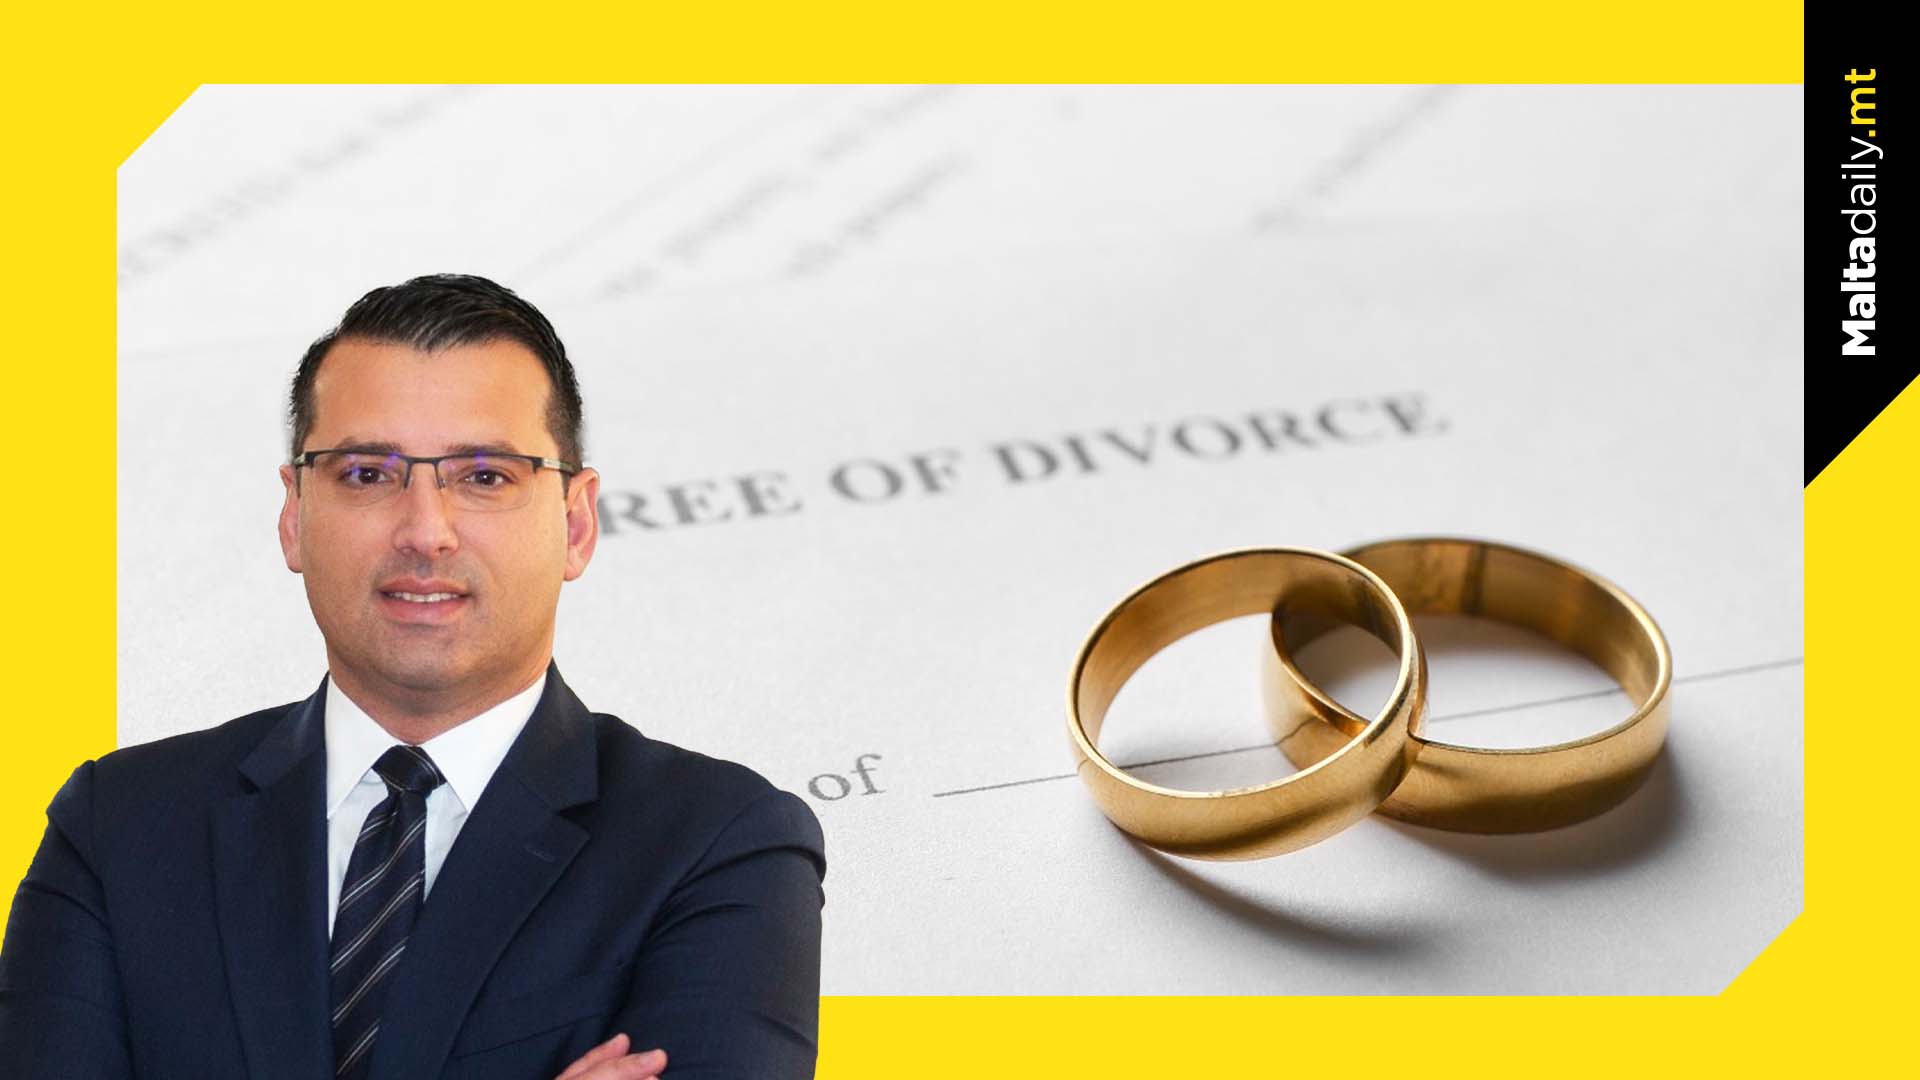 544 divorce cases filed in 2022 in Malta & Gozo